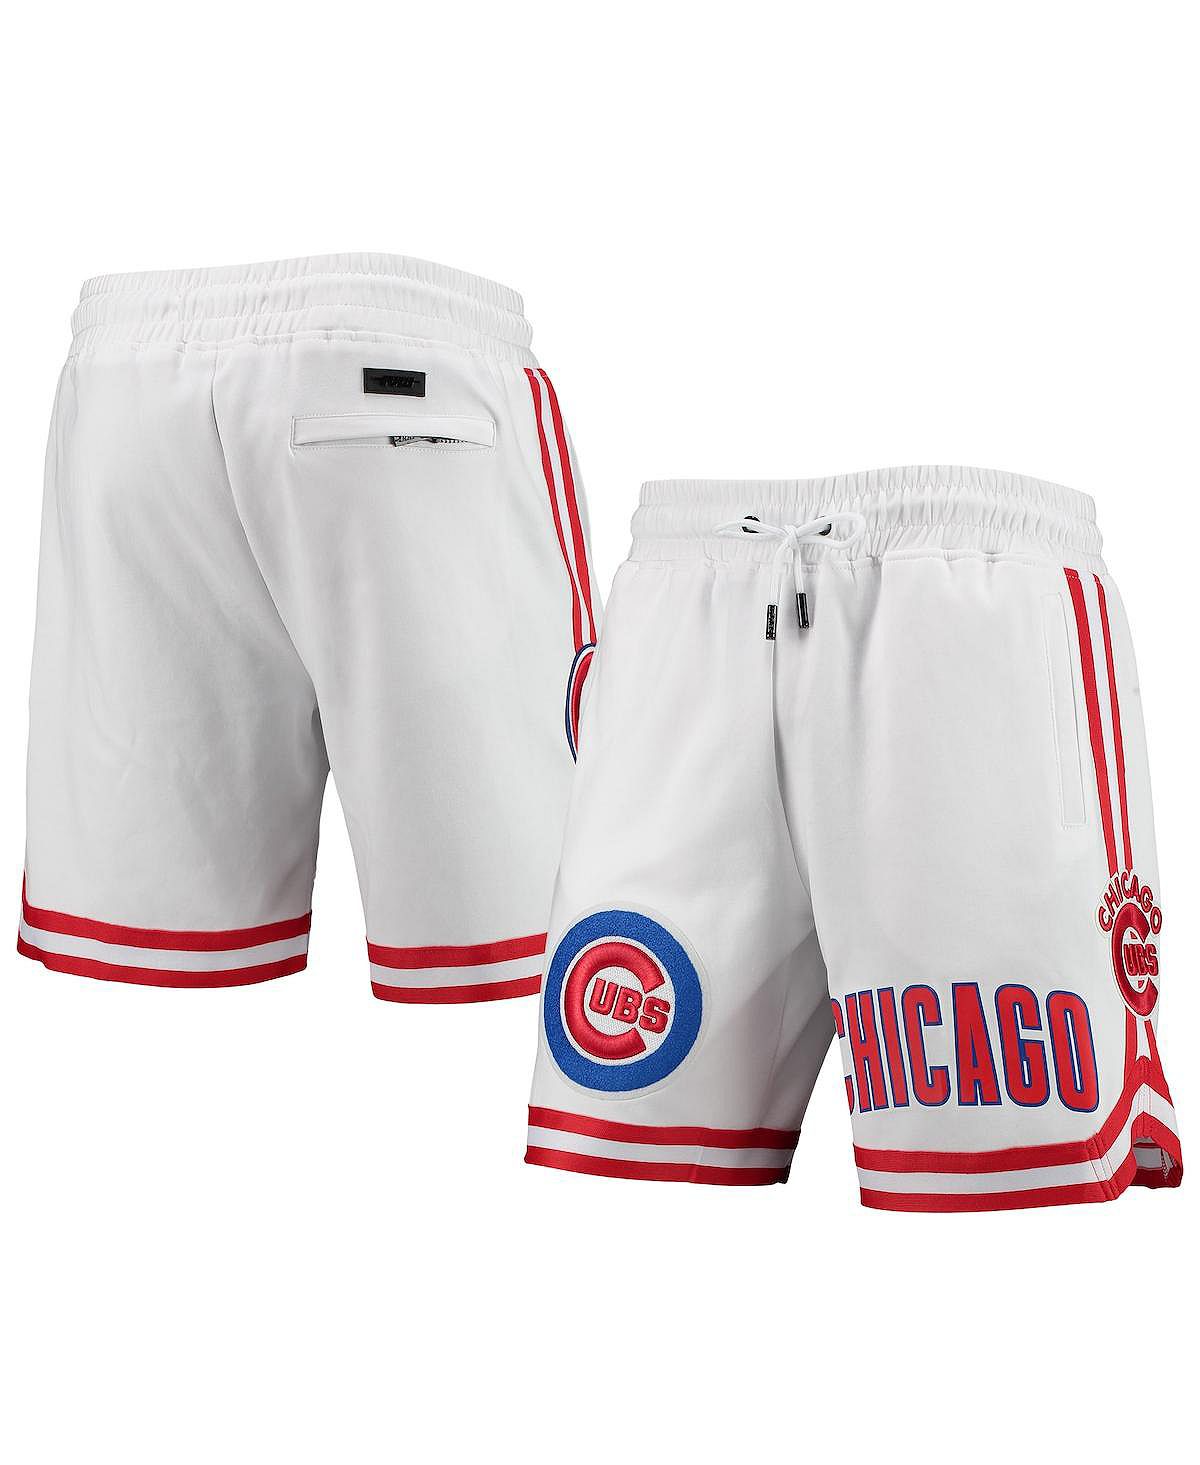 Мужские белые шорты с логотипом команды Chicago Cubs Pro Standard